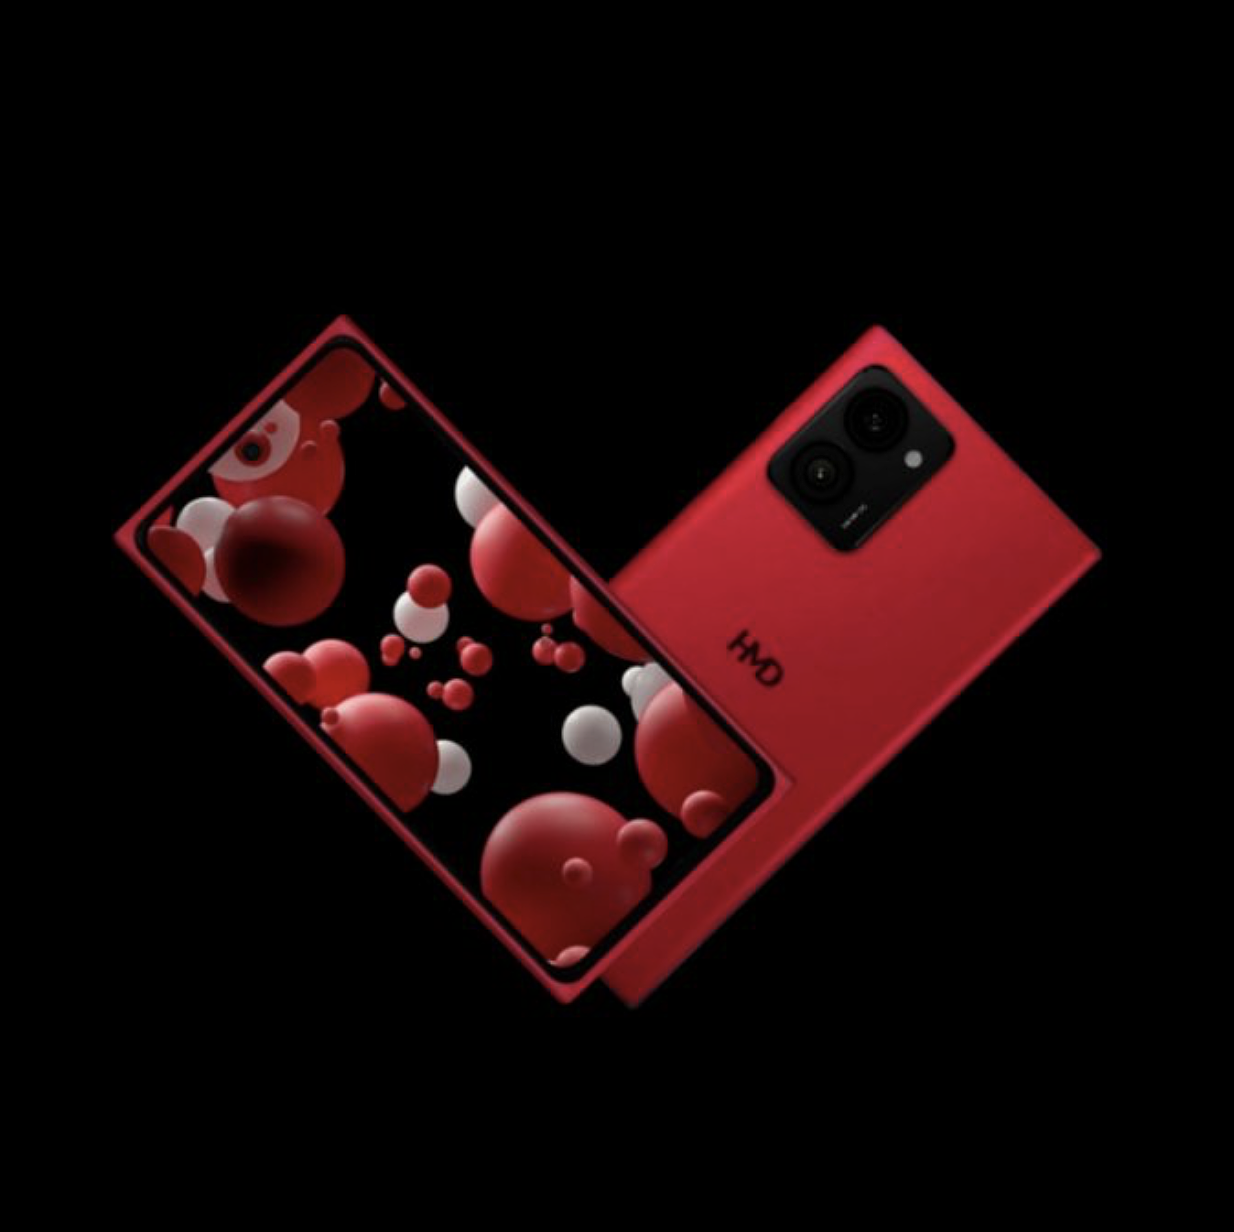 含 Lumia“复刻手机”/Fusion 模块化机型，HMD 多款新机售价 / 更多渲染图曝光 - 1